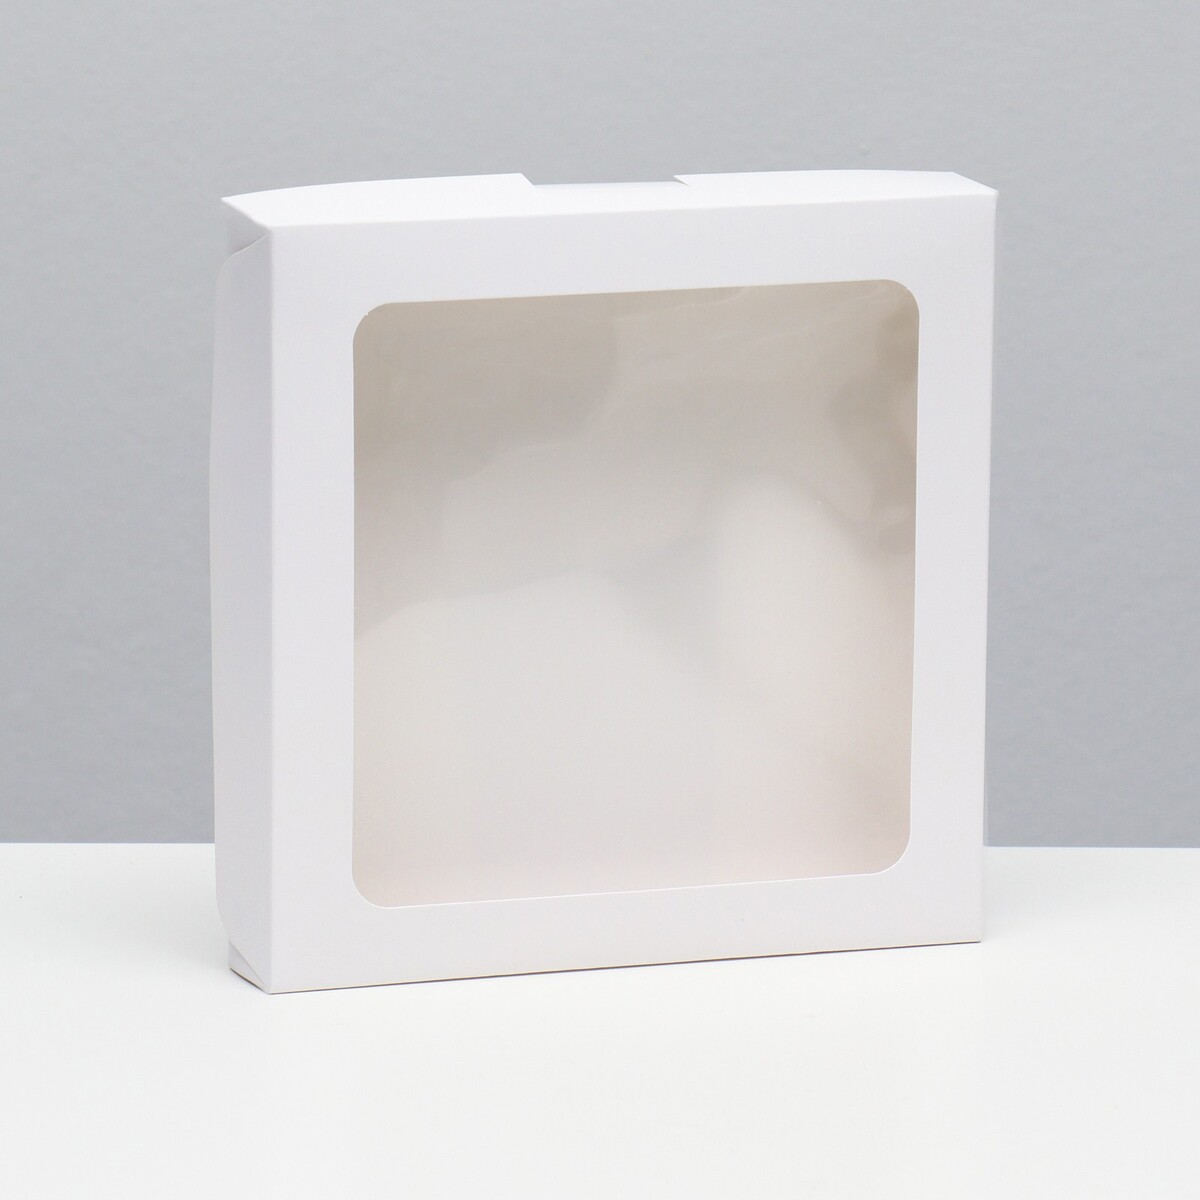 Коробка самосборная, белая, 19 х 19 х 3 см коробка самосборная белая 19 х 19 х 3 см